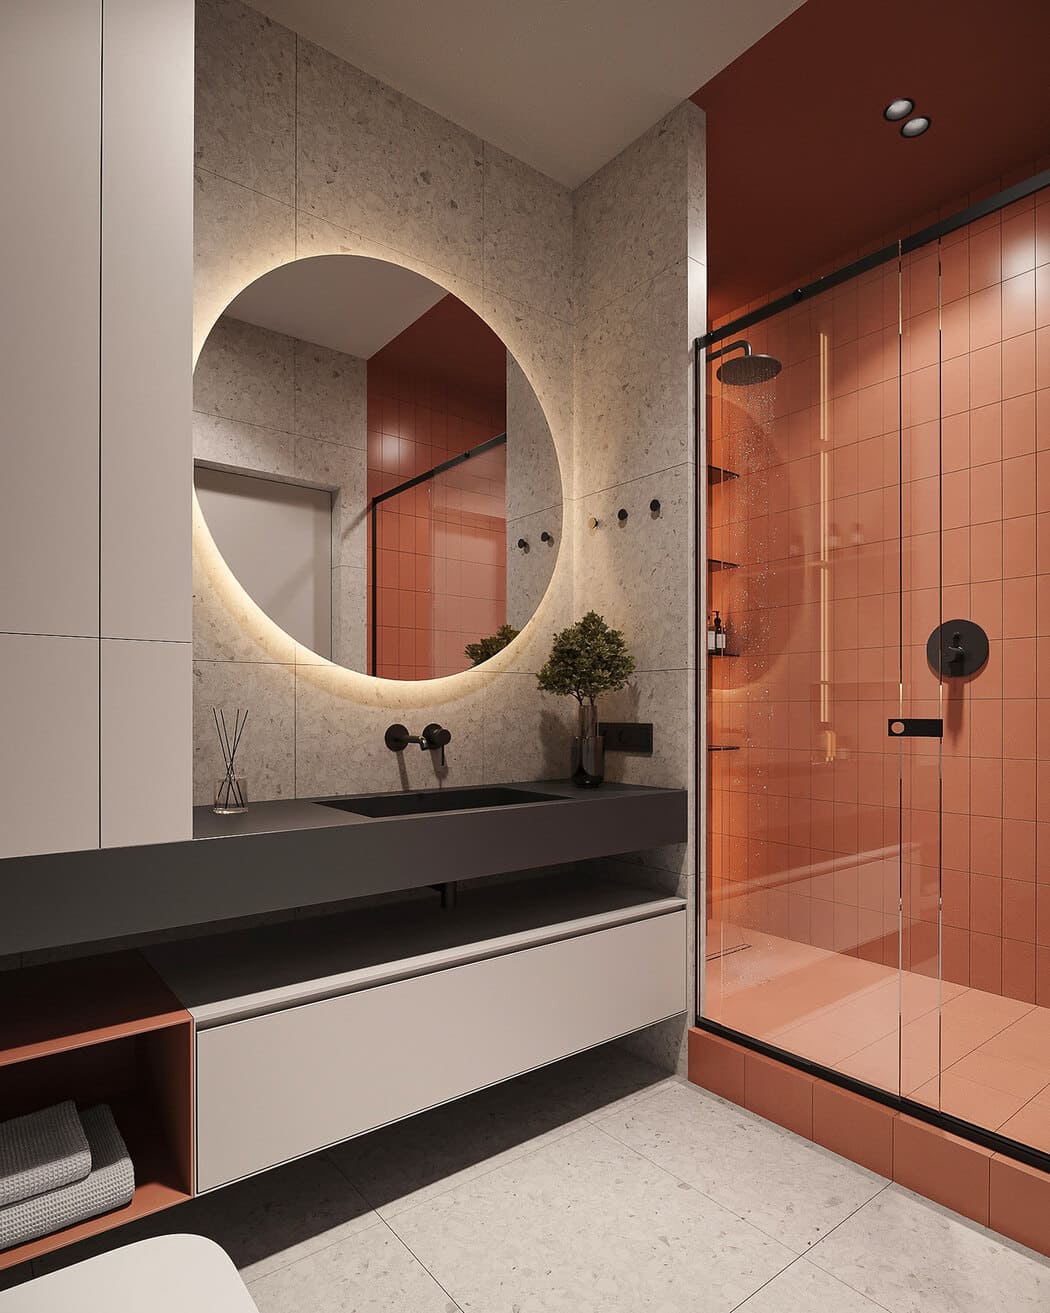 Минималистичная квартира с контрастными акцентами в стиле минимализма, ванная, фото 9